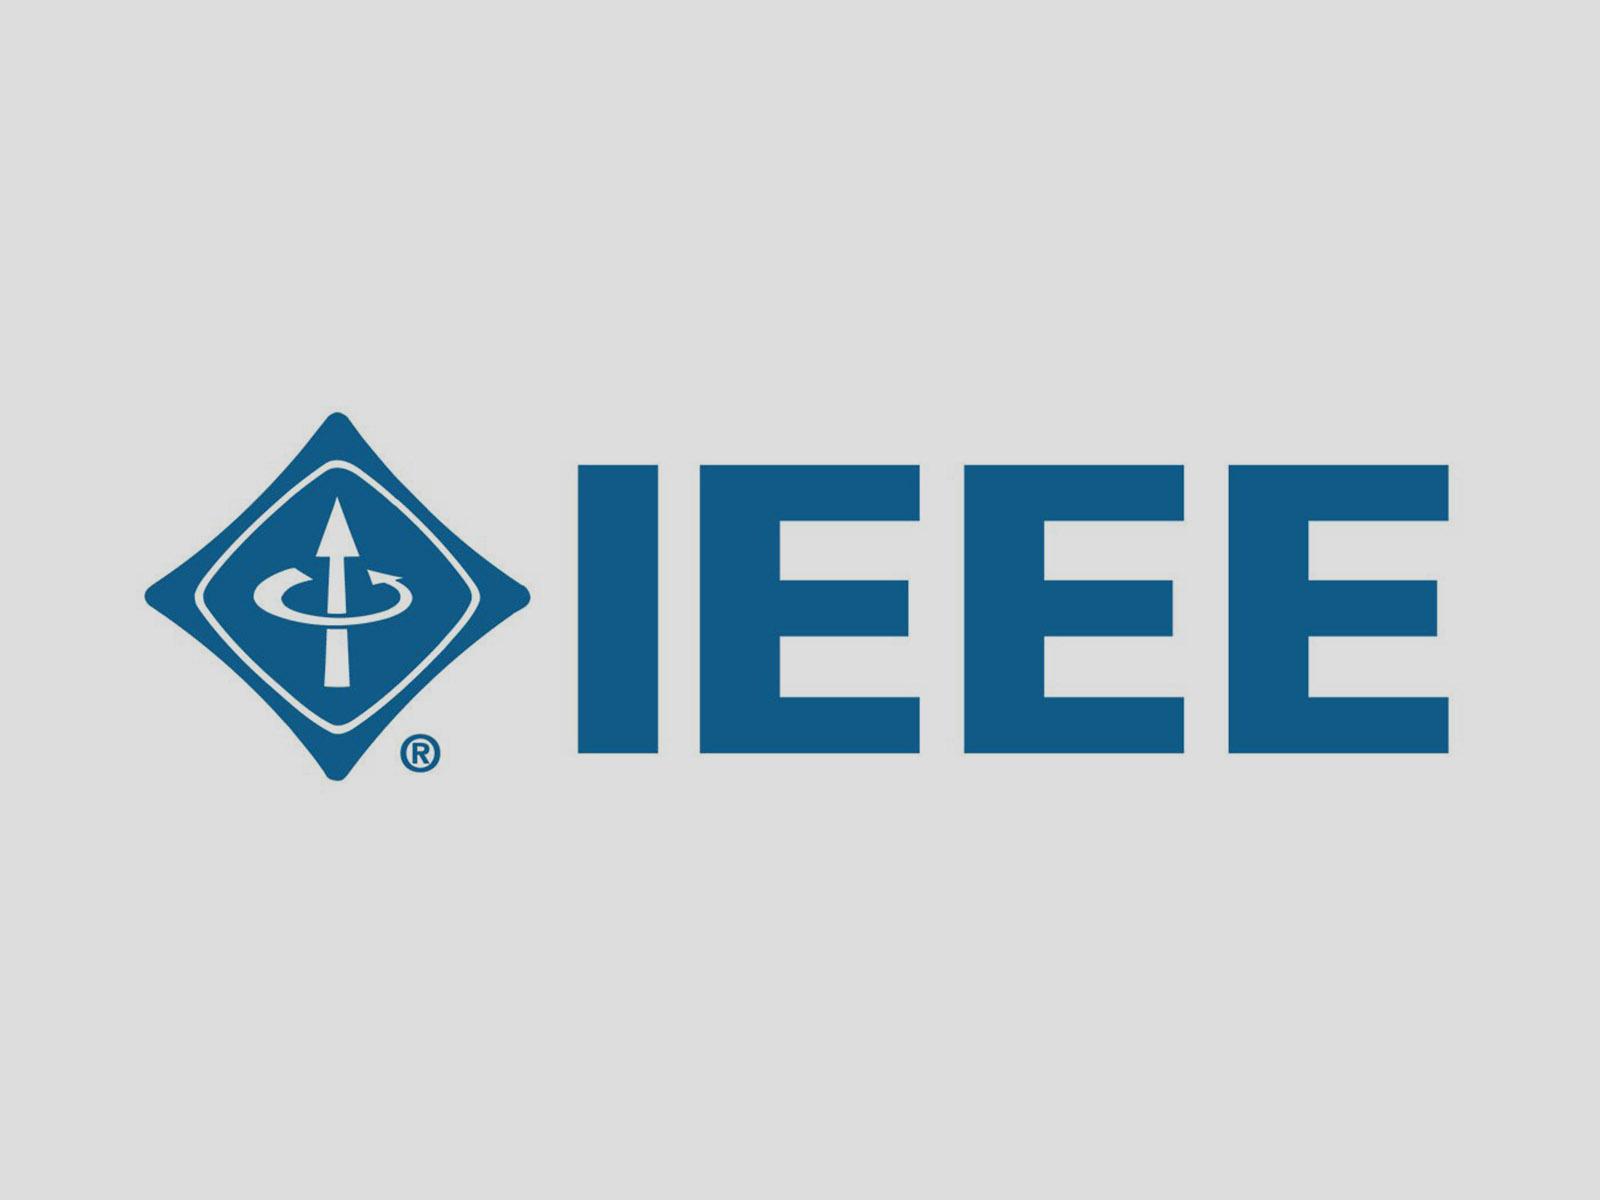  IEEE CertifAIEd